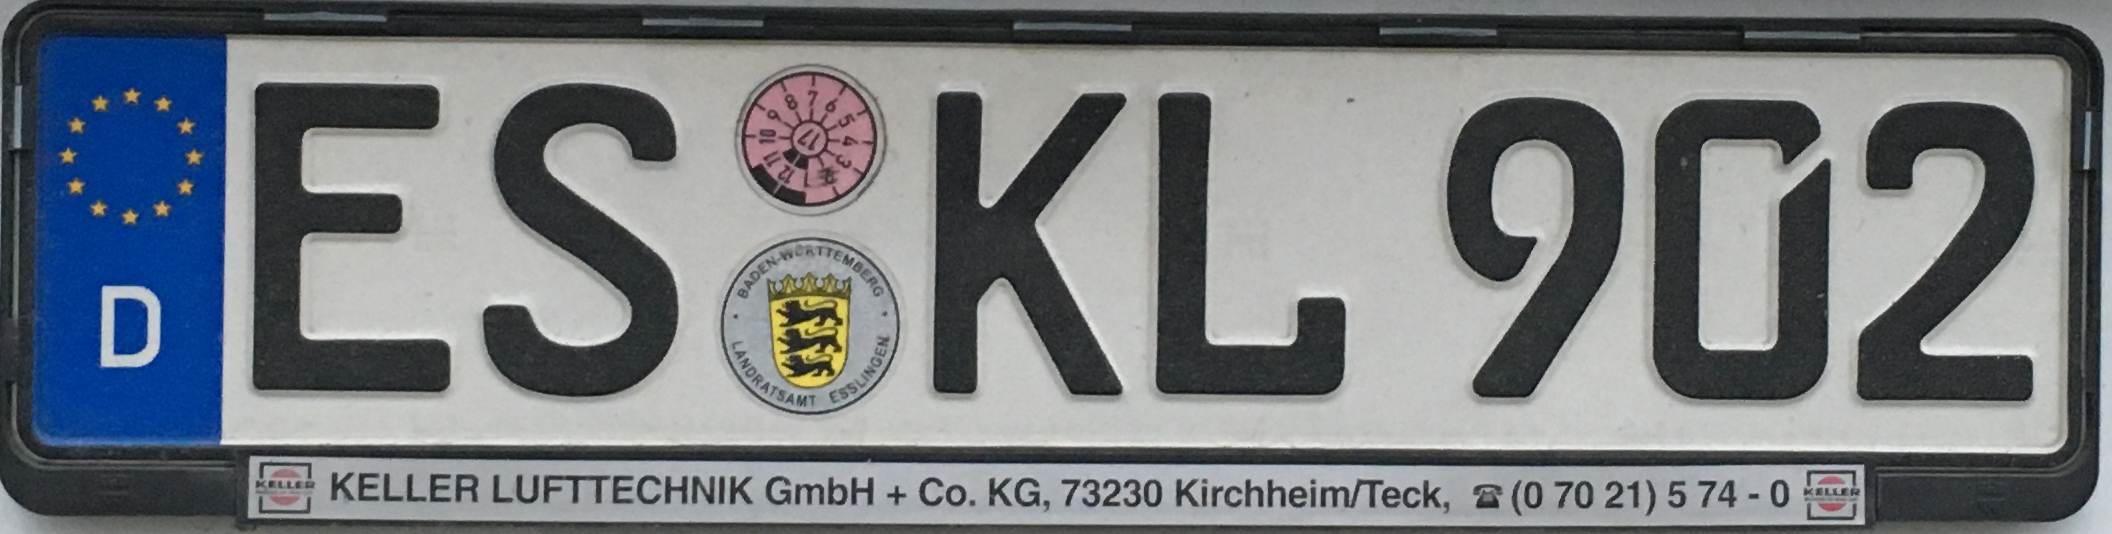 Registrační značky Německo - ES - Esslingen, foto: www.podalnici.cz